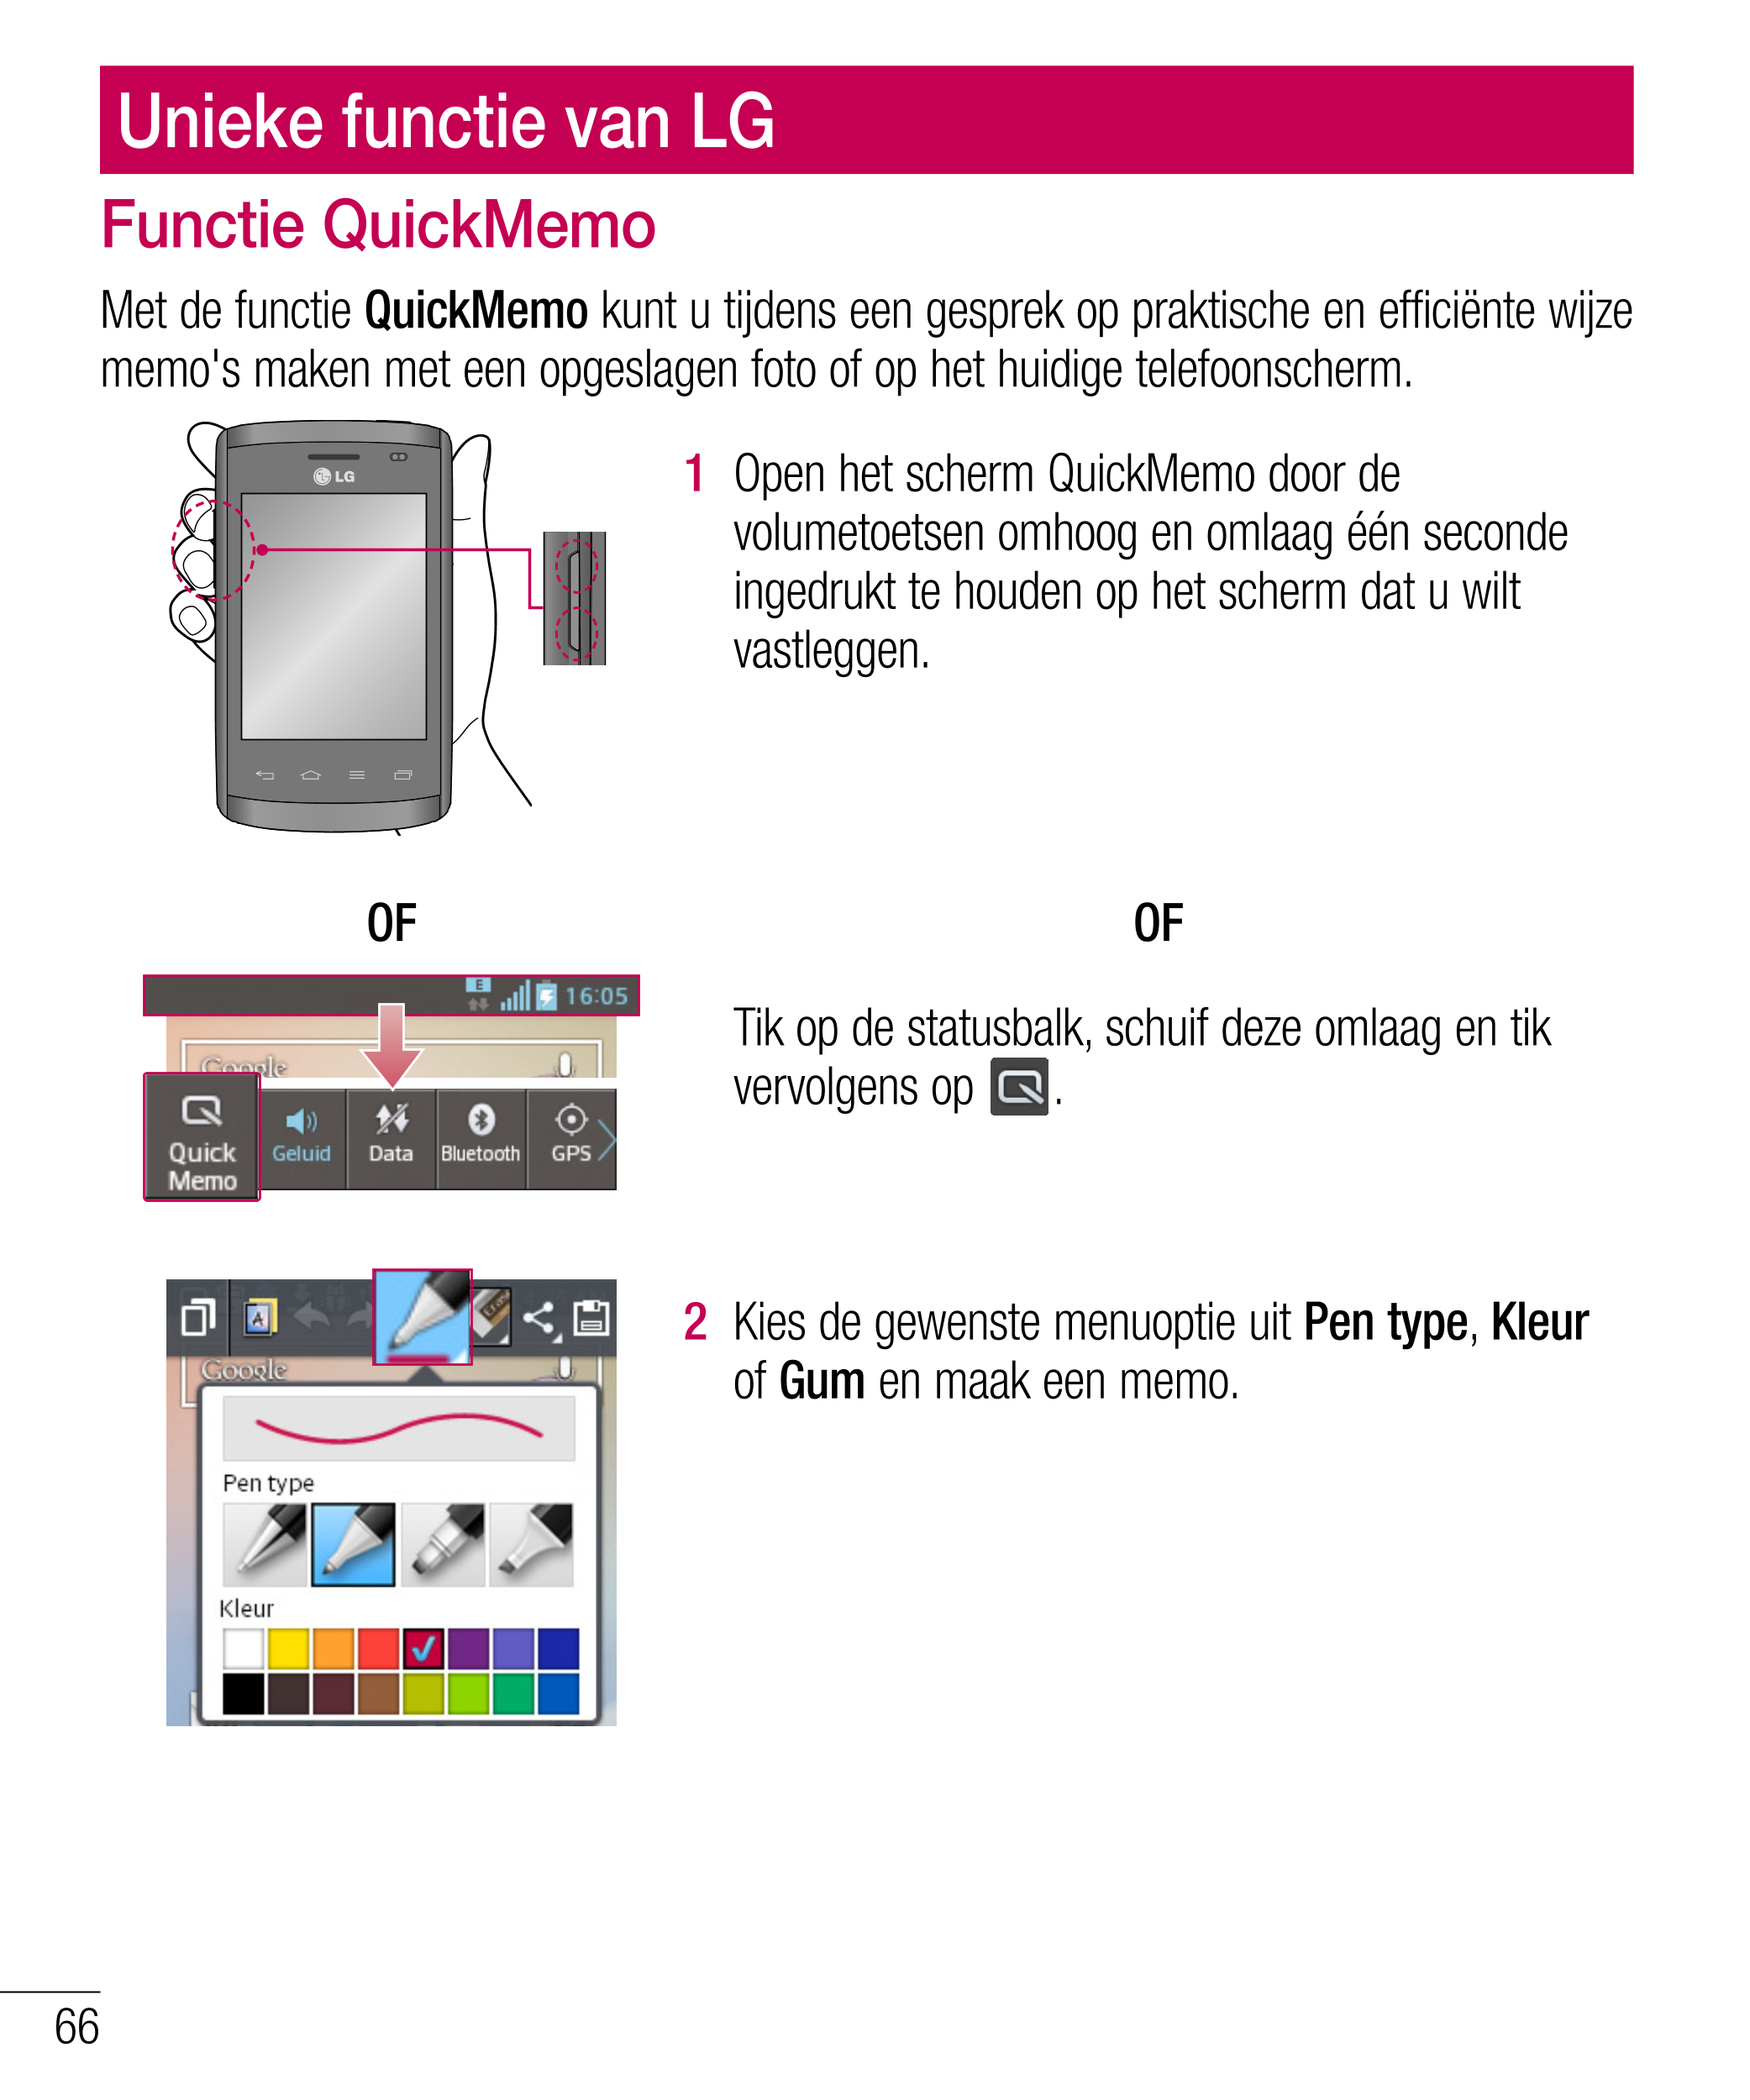 Unieke functie van LG
Functie QuickMemo
Met de functie  QuickMemo kunt u tijdens een gesprek op praktische en efficiënte wijze 
